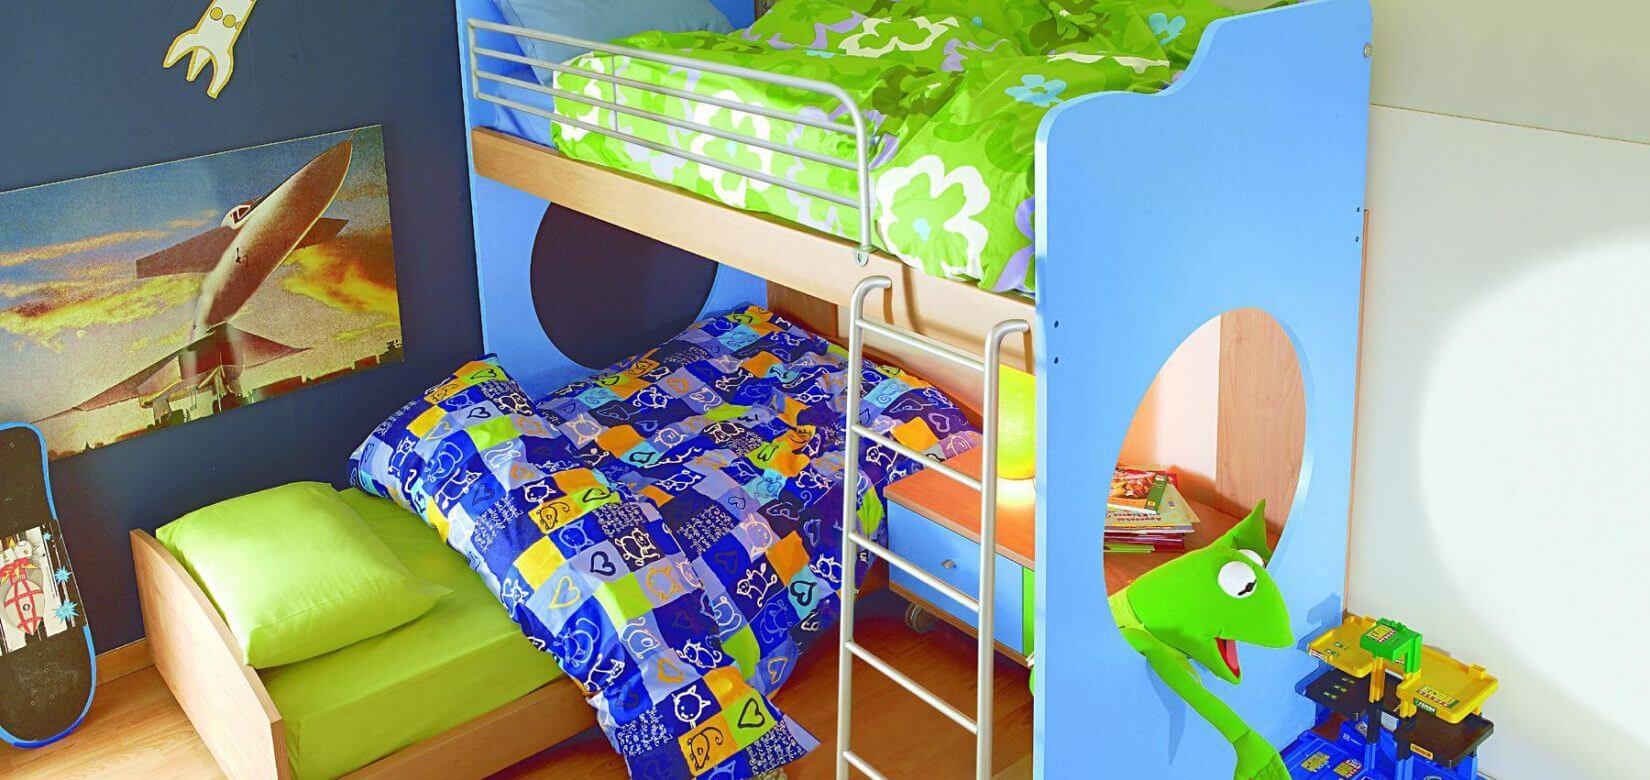 Κρεβάτια κουκέτες: Τι πρέπει να ξέρεις για την ασφάλεια των παιδιών πριν τα αγοράσεις